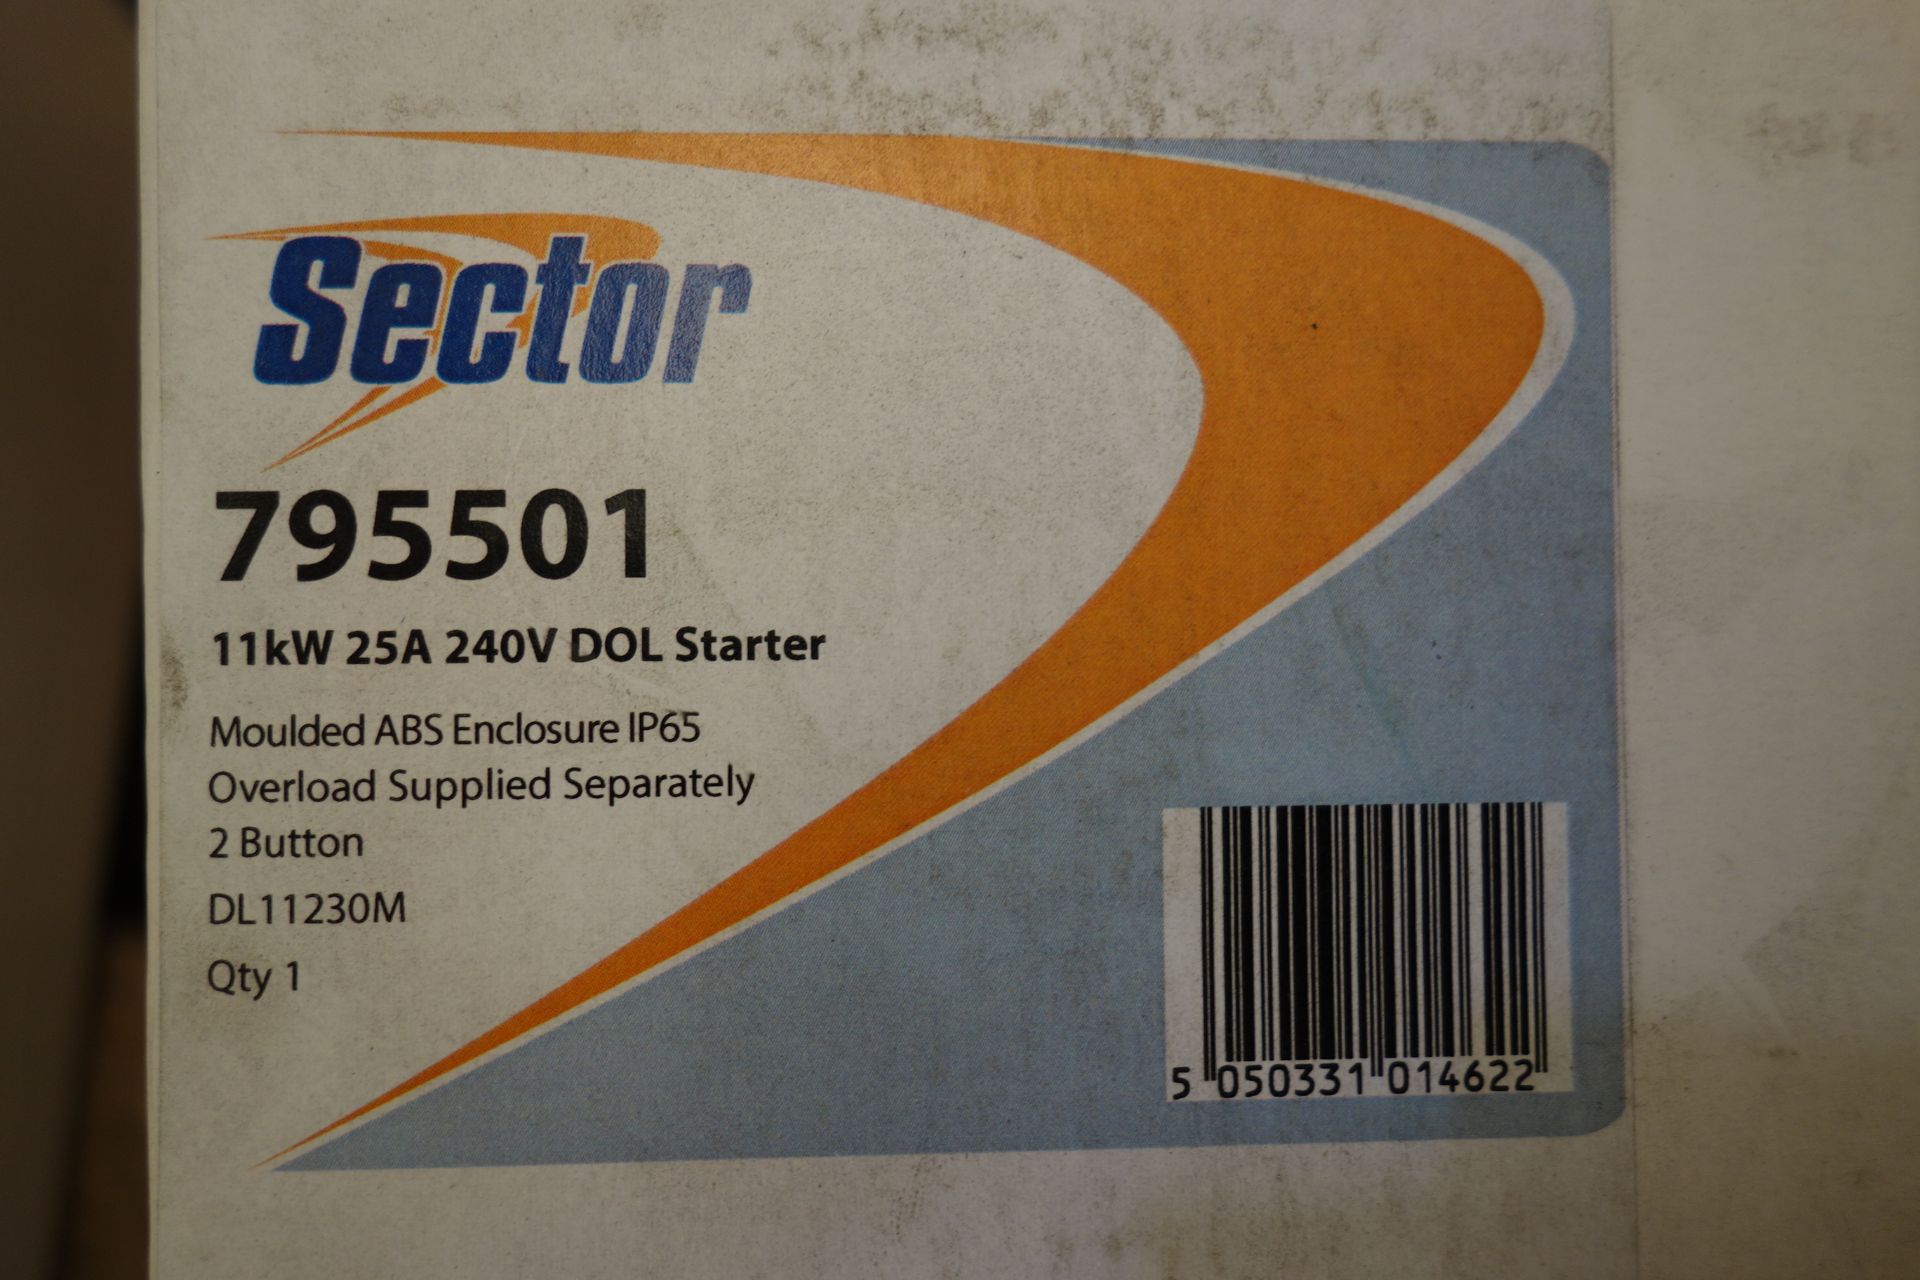 6 X Sector 795501 11kW 25A 240V Dol Starter IP65 Enclosure